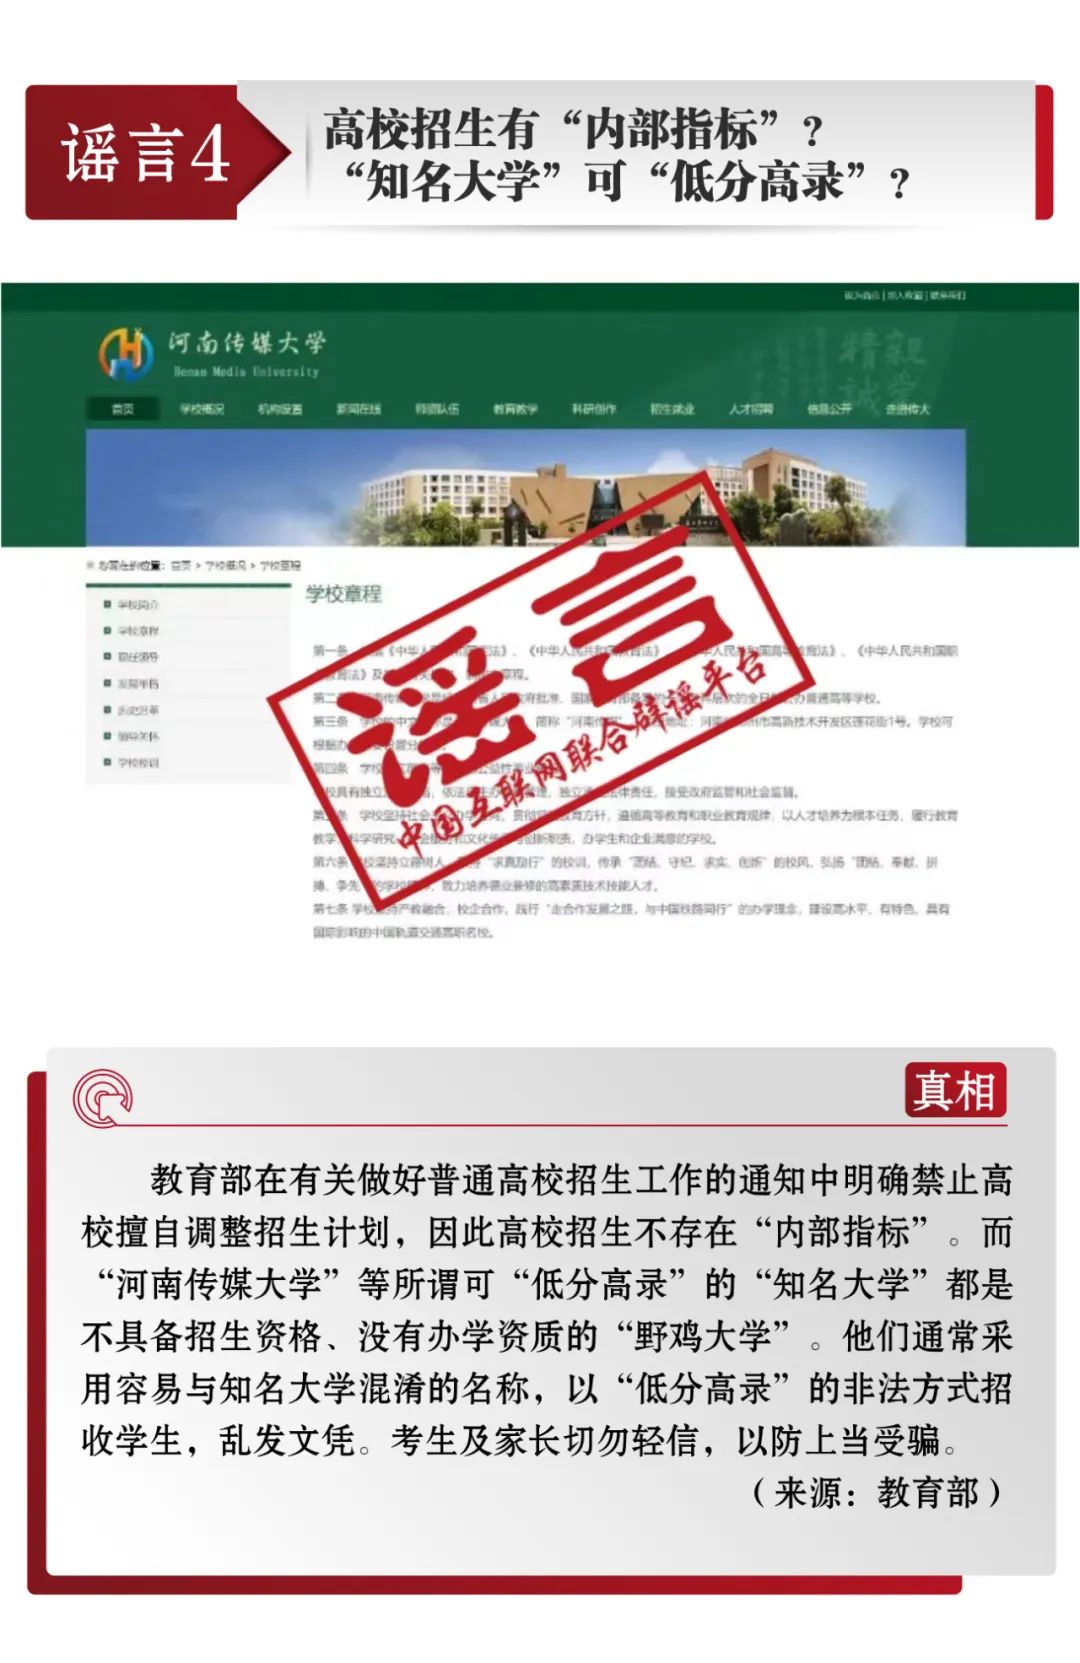 互联网联合辟谣平台发布7月辟谣榜 央广网 